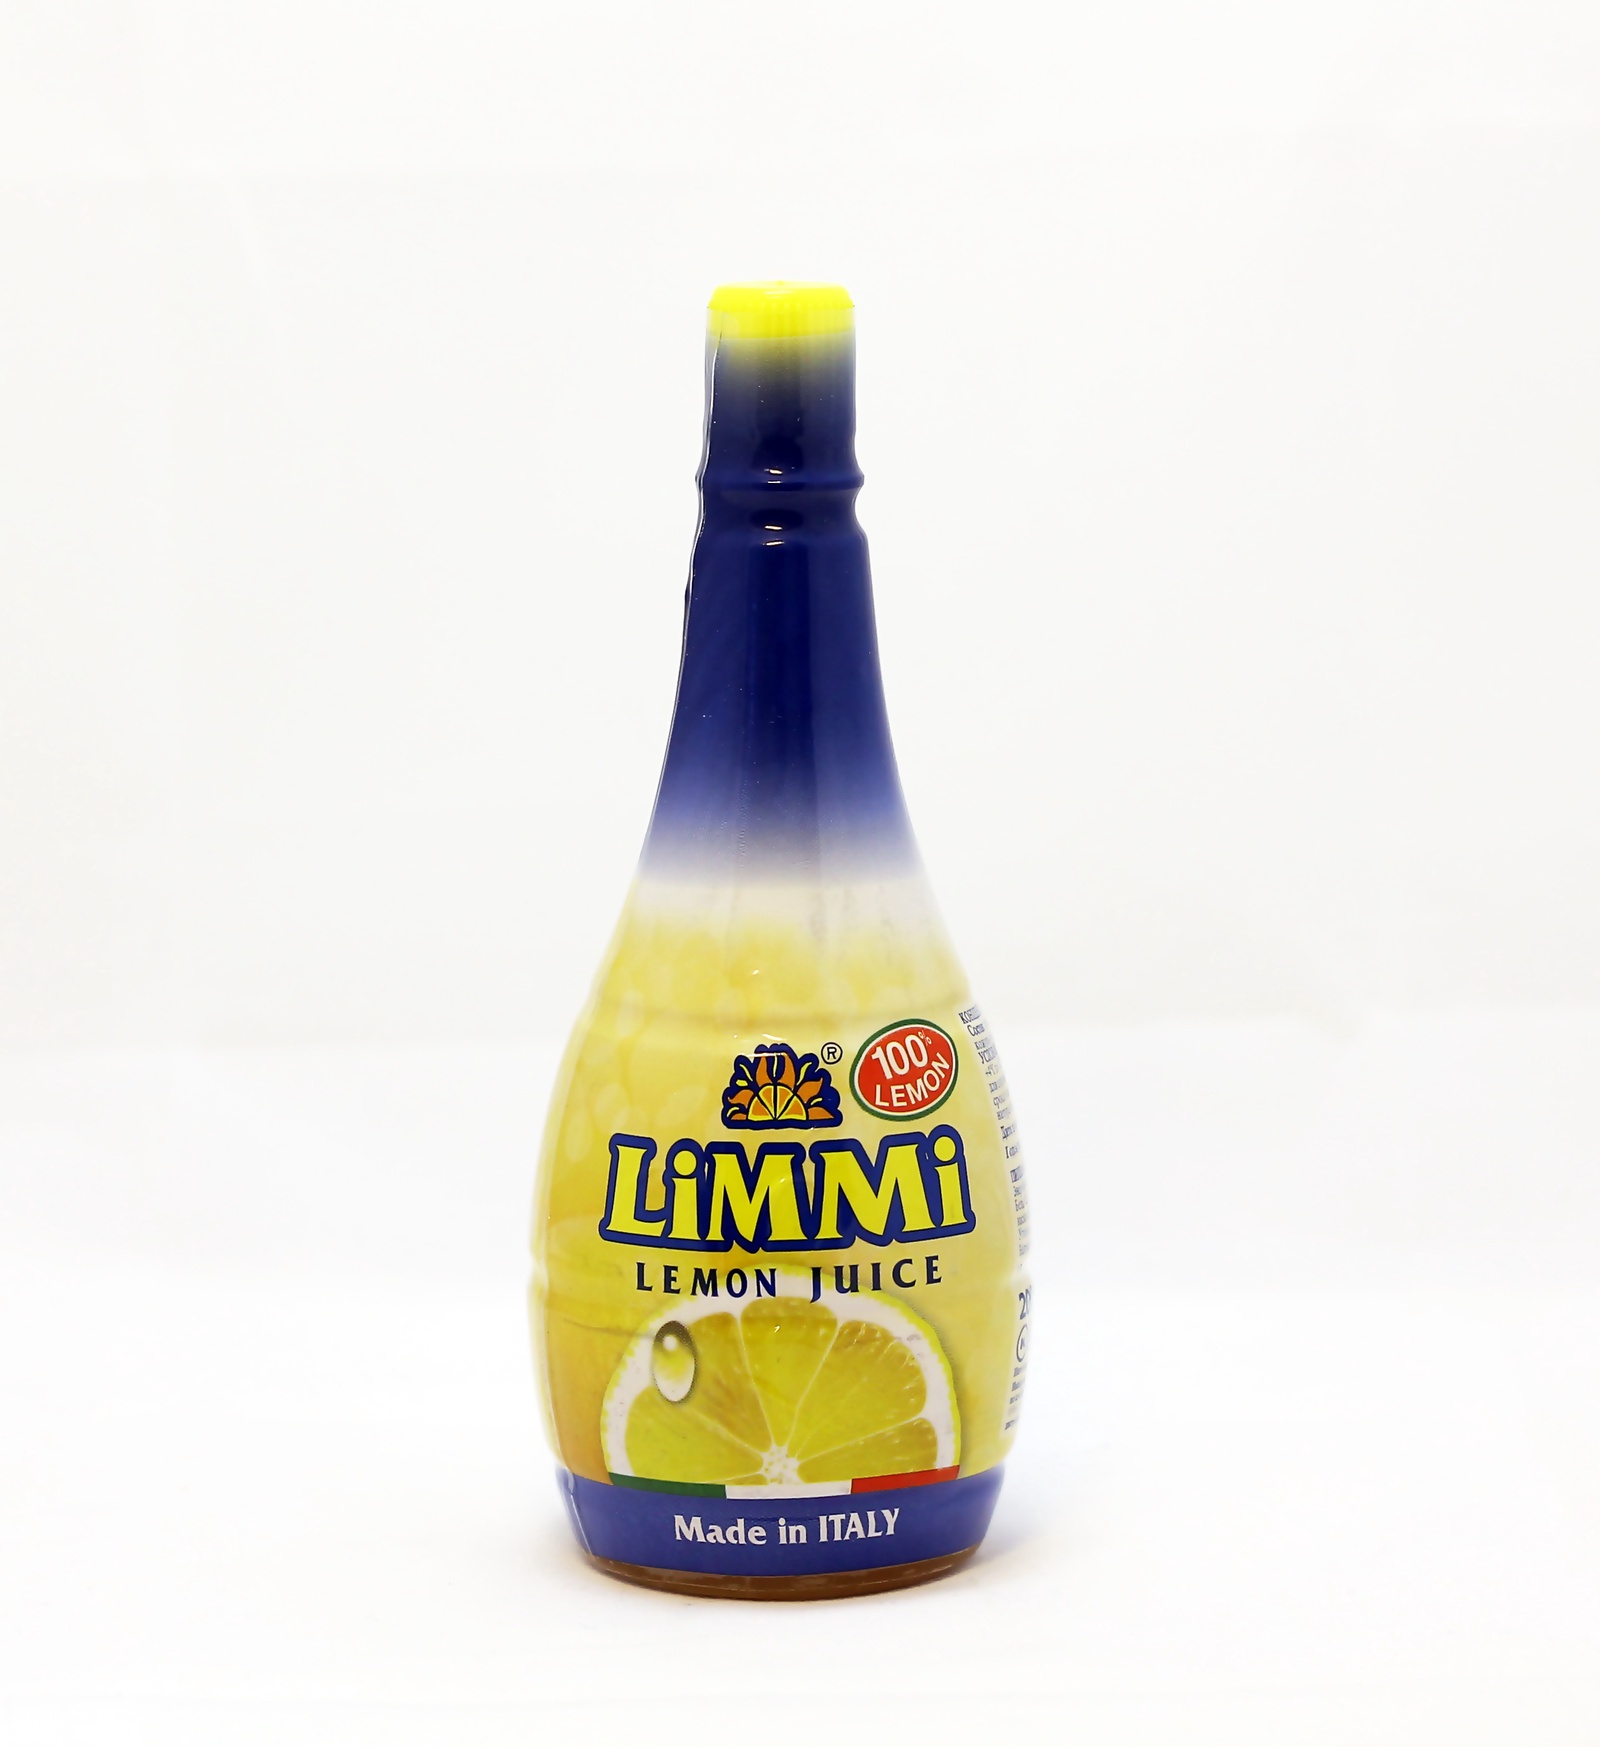 Концентрат лимона. Сок лимона limmi концентрированный. Сок Condy лимонный, концентрированный, 200 мл. Сок лимона Condy 200 мл. TRS сок лимона 250 мл.